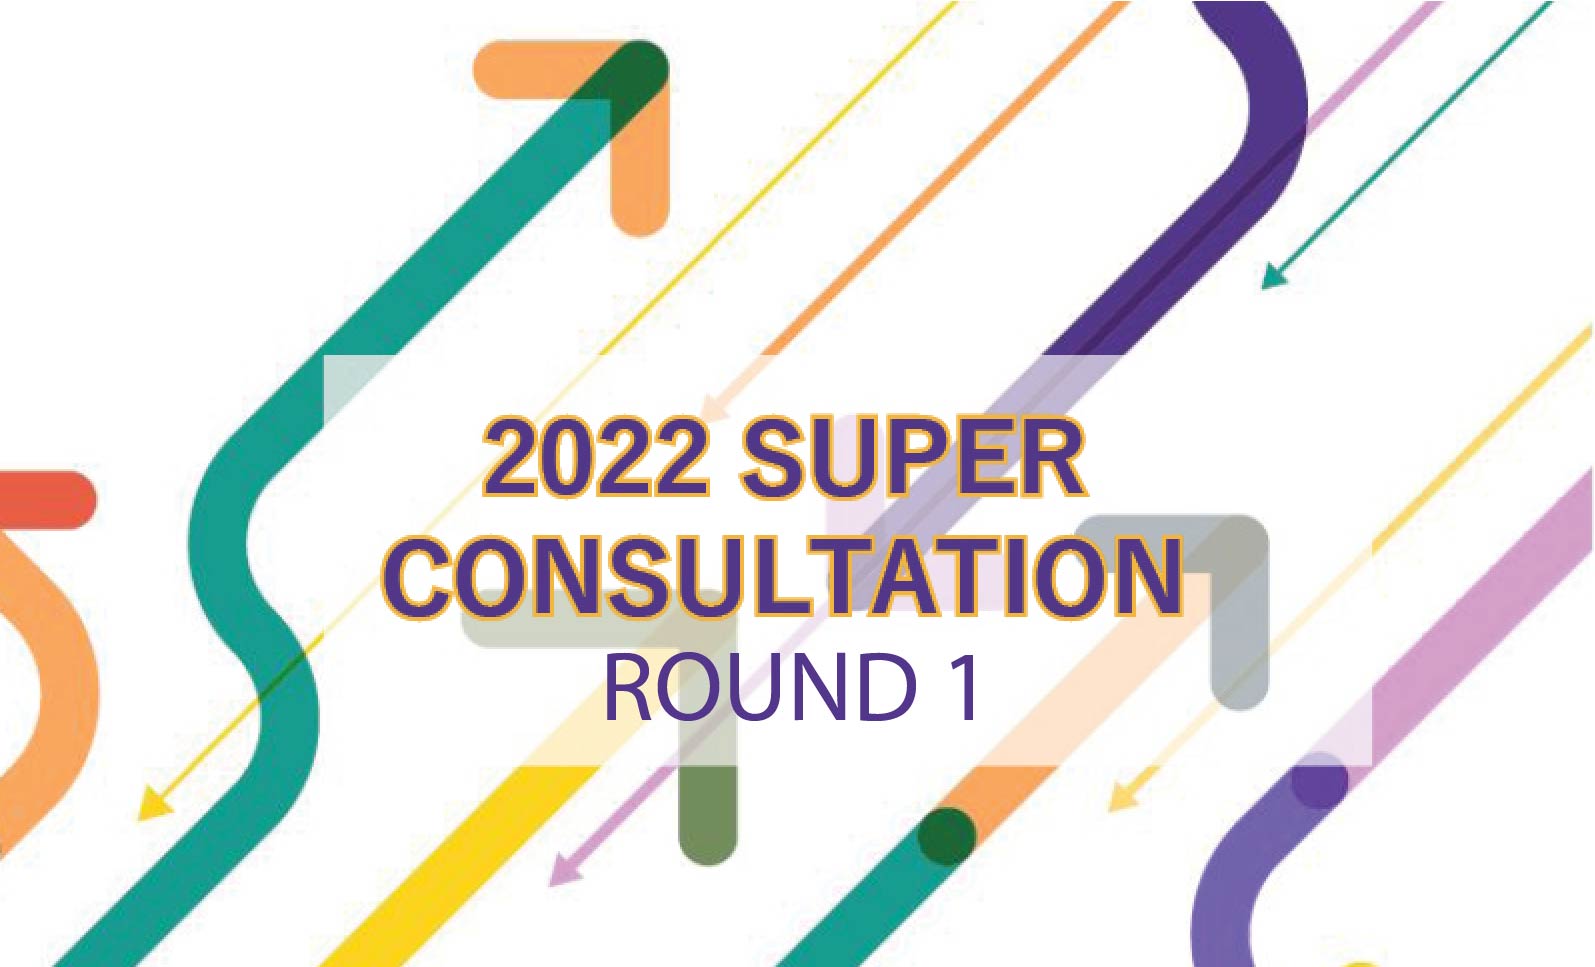 Round 1 of the 2022 Super Consultation